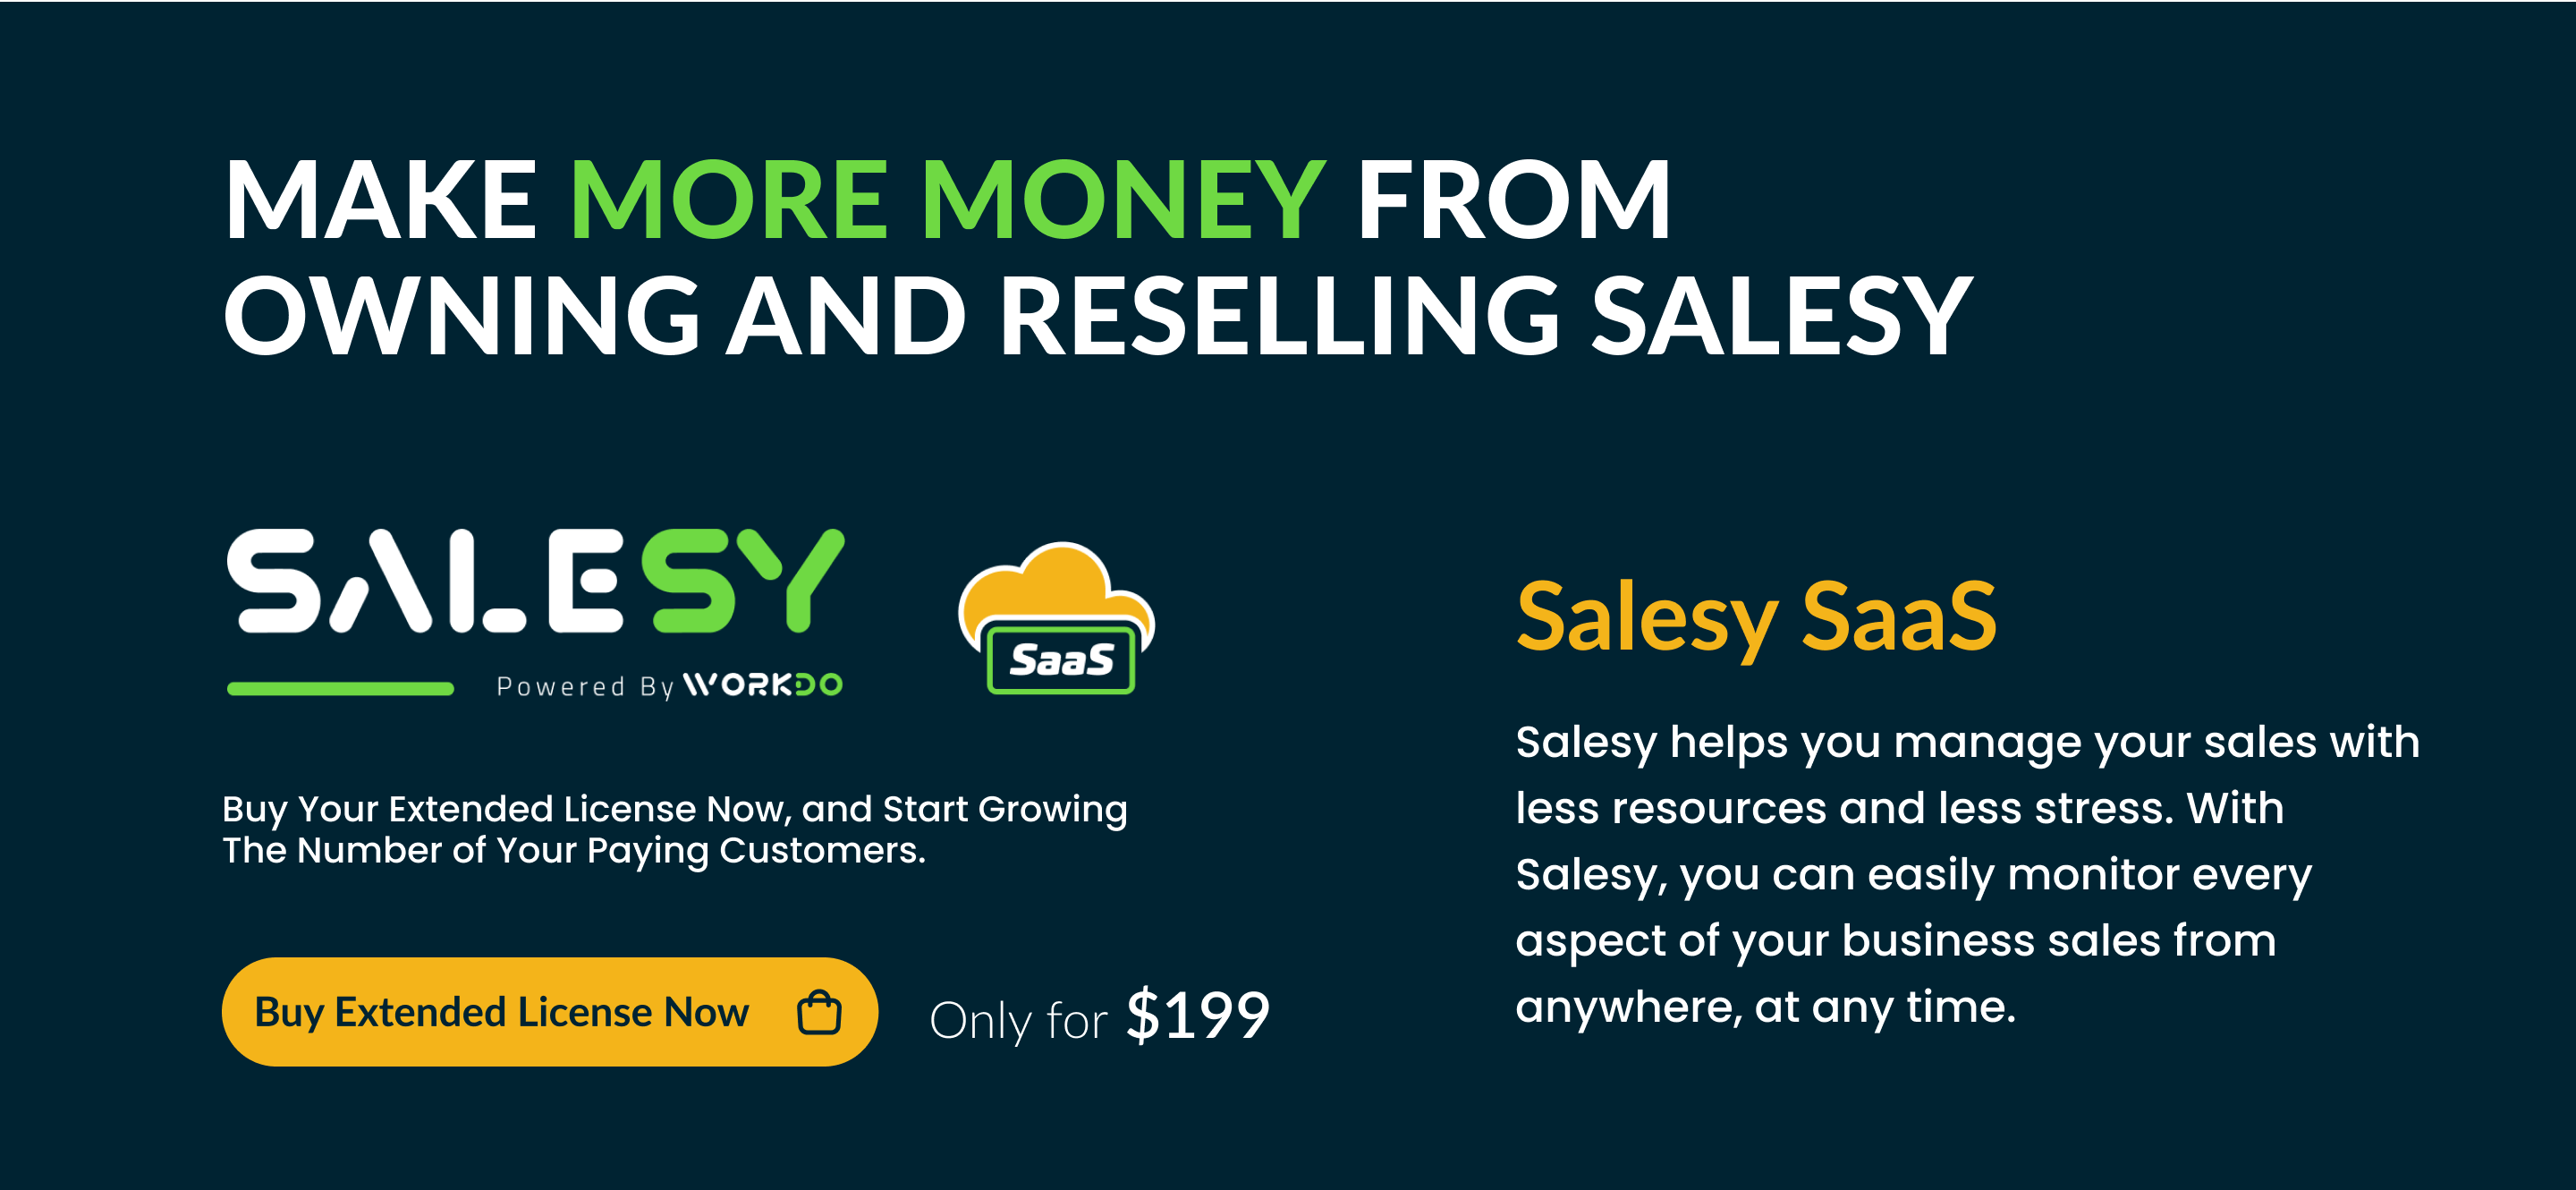 Salesy SaaS - Business Sales CRM - 7